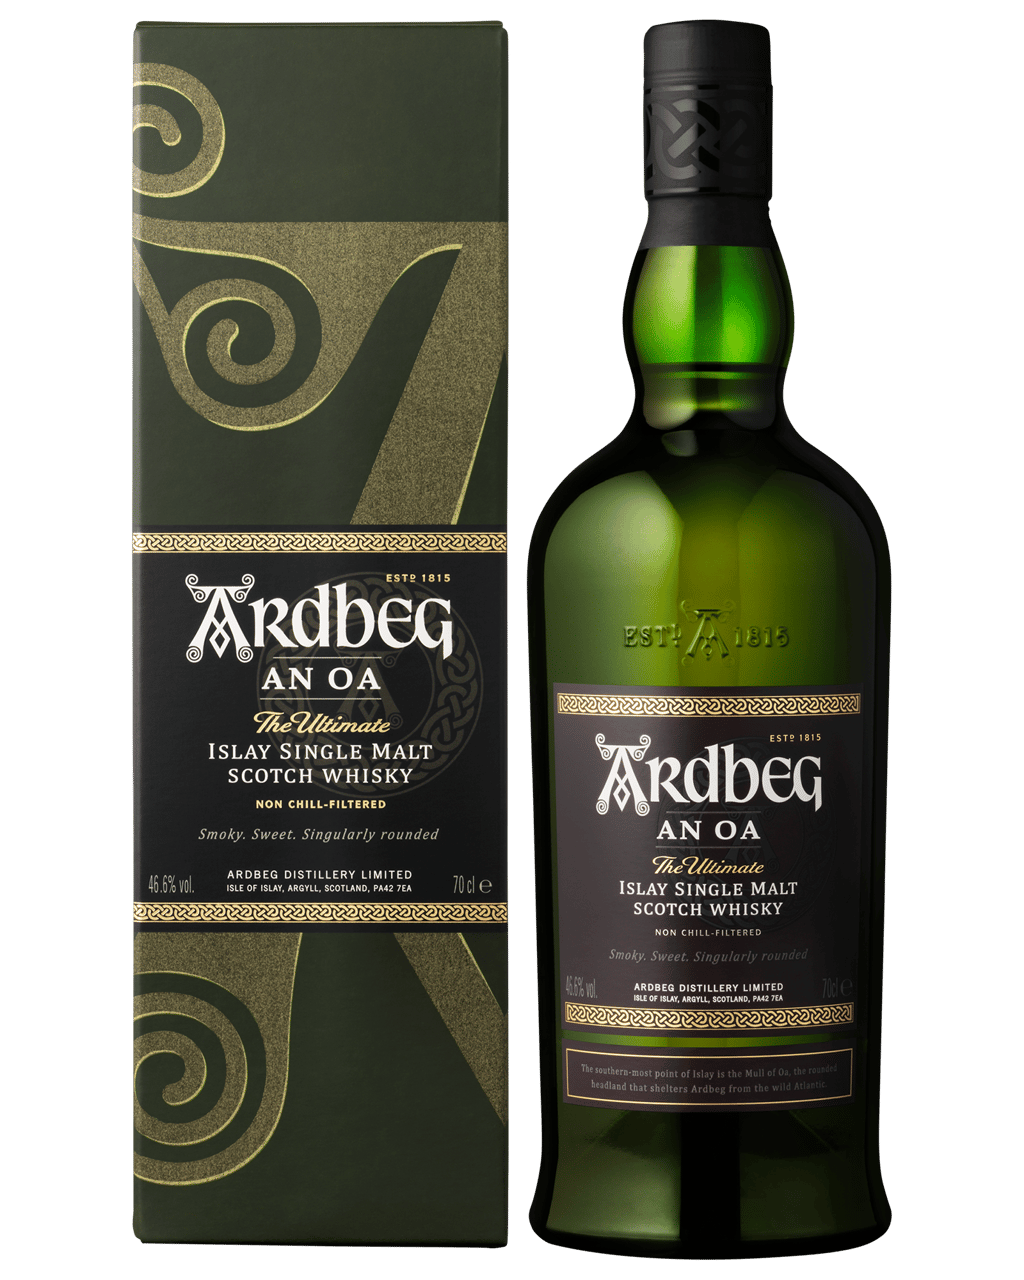 Ardbeg An Oa Islay Single Malt Scotch Whisky 700ml (Unbeatable